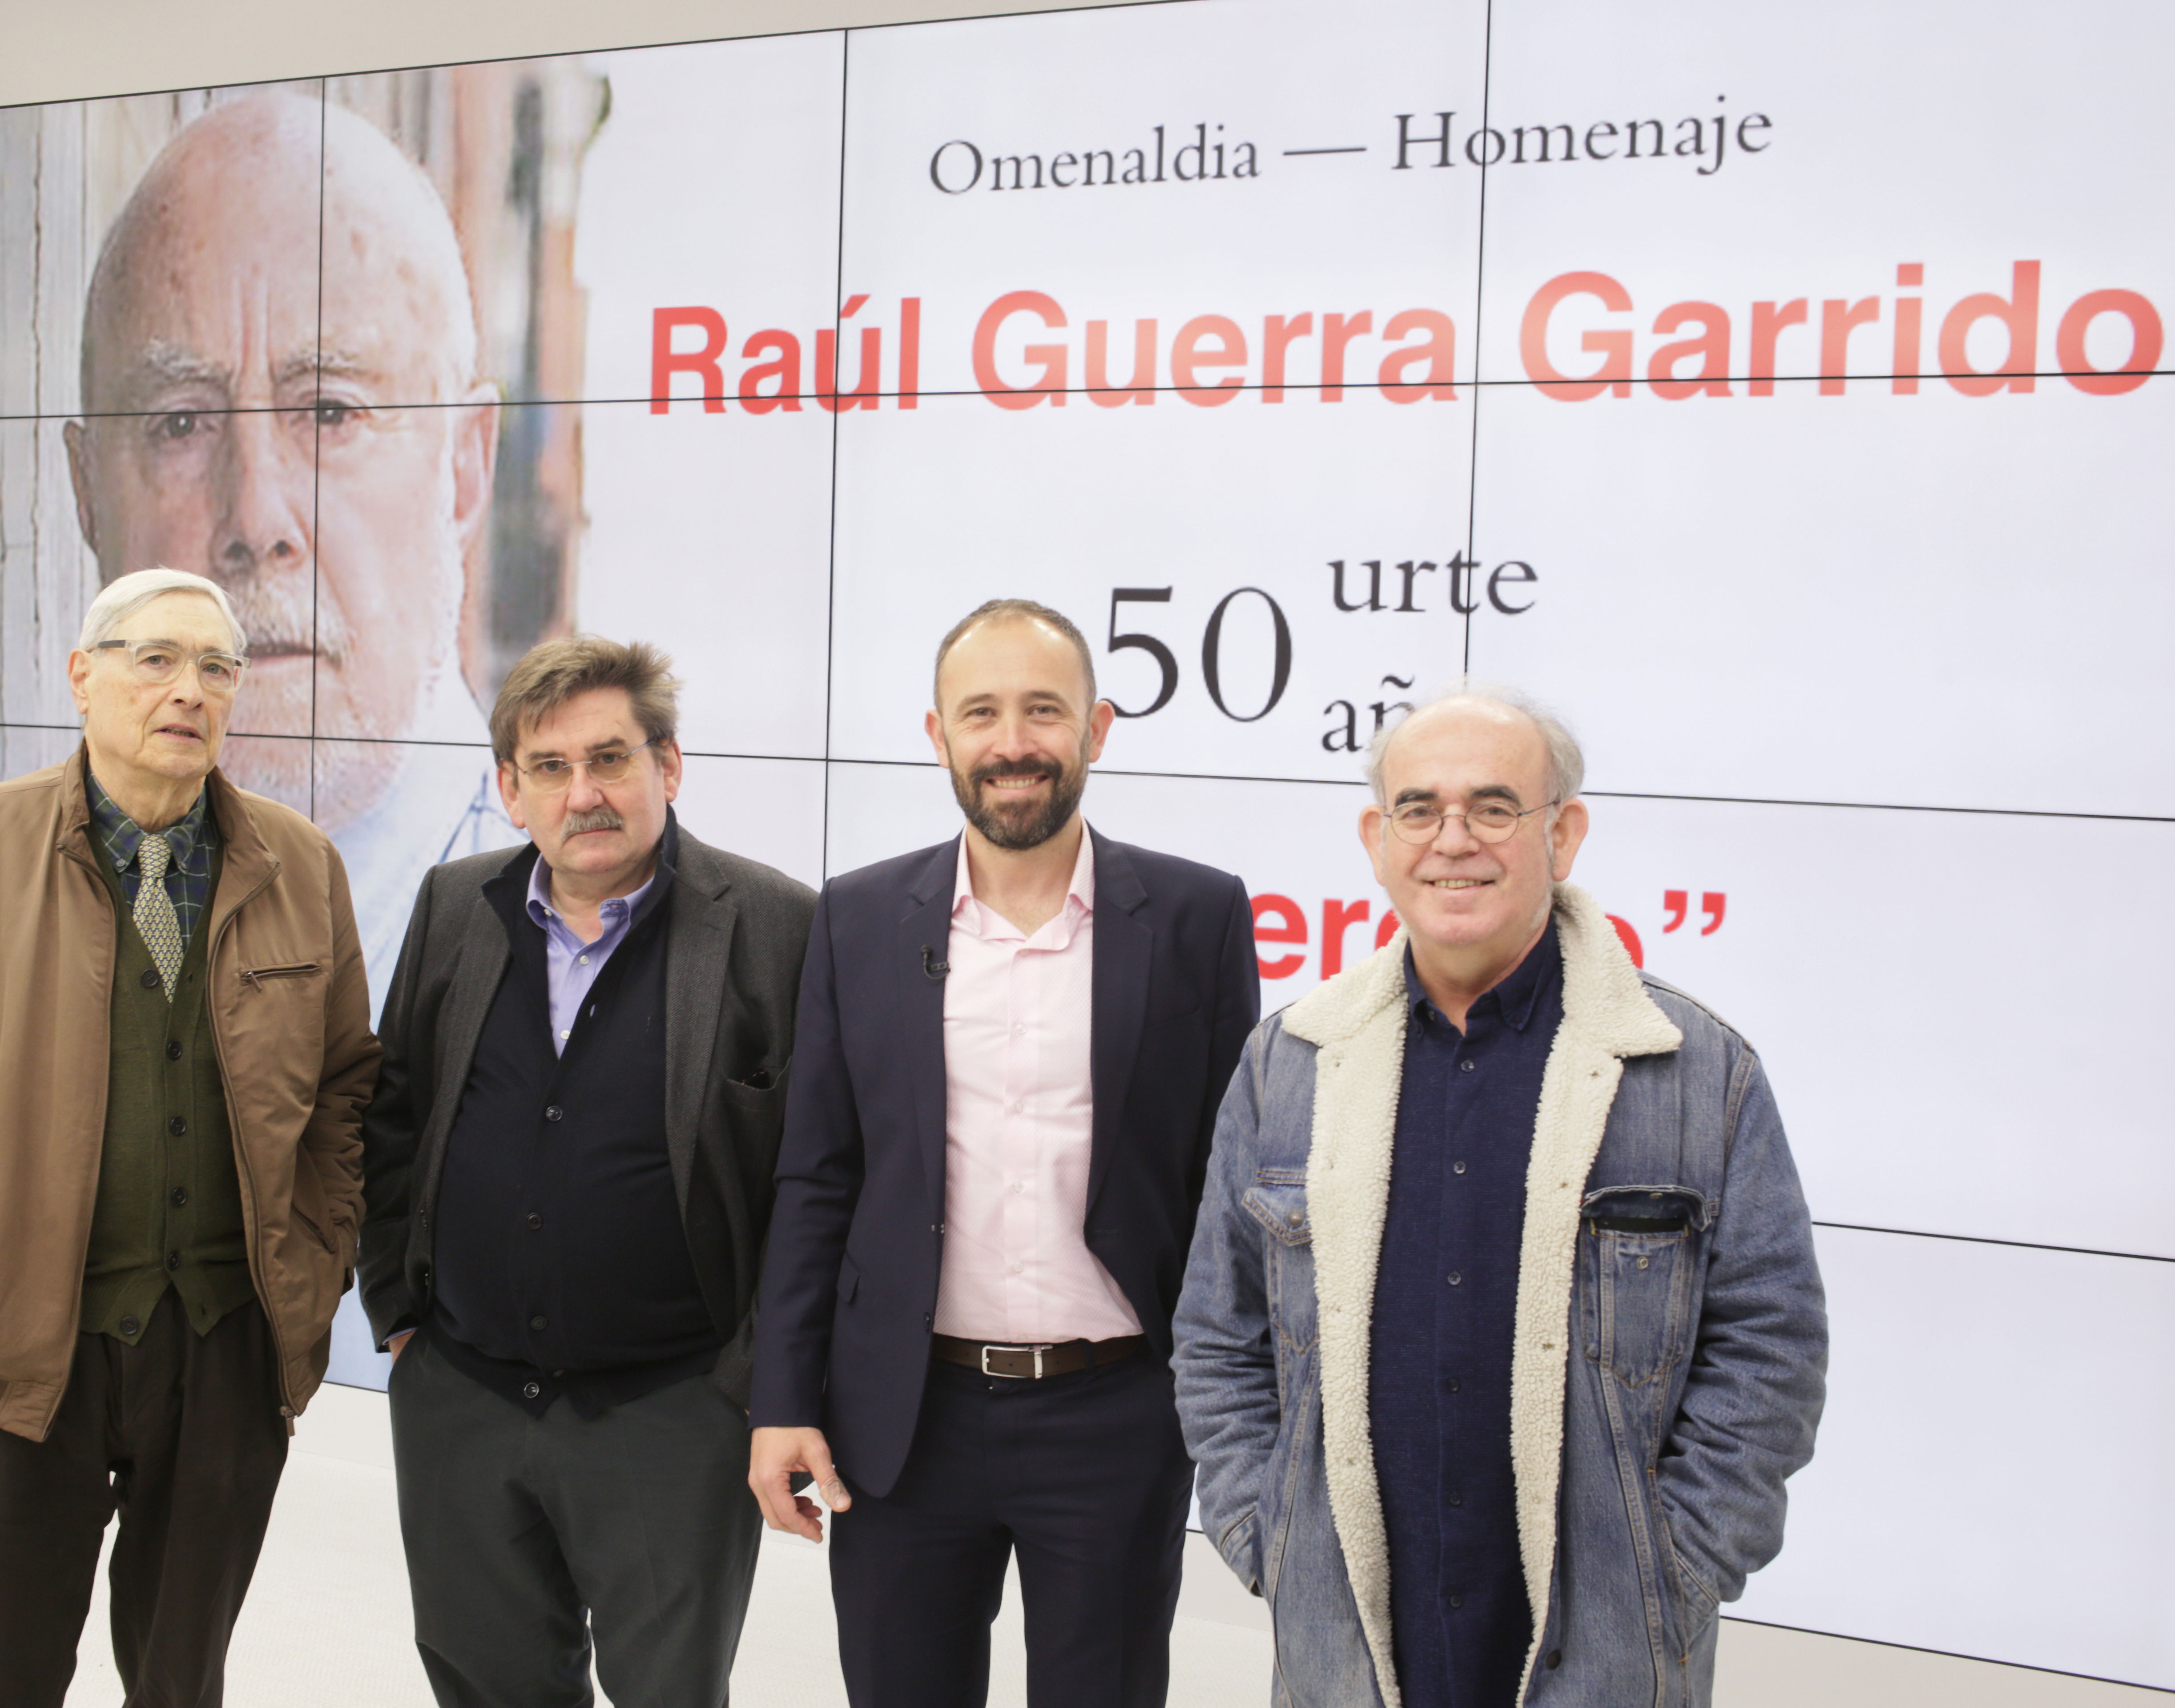 La Diputación brindará un homenaje a Raúl Guerra Garrido